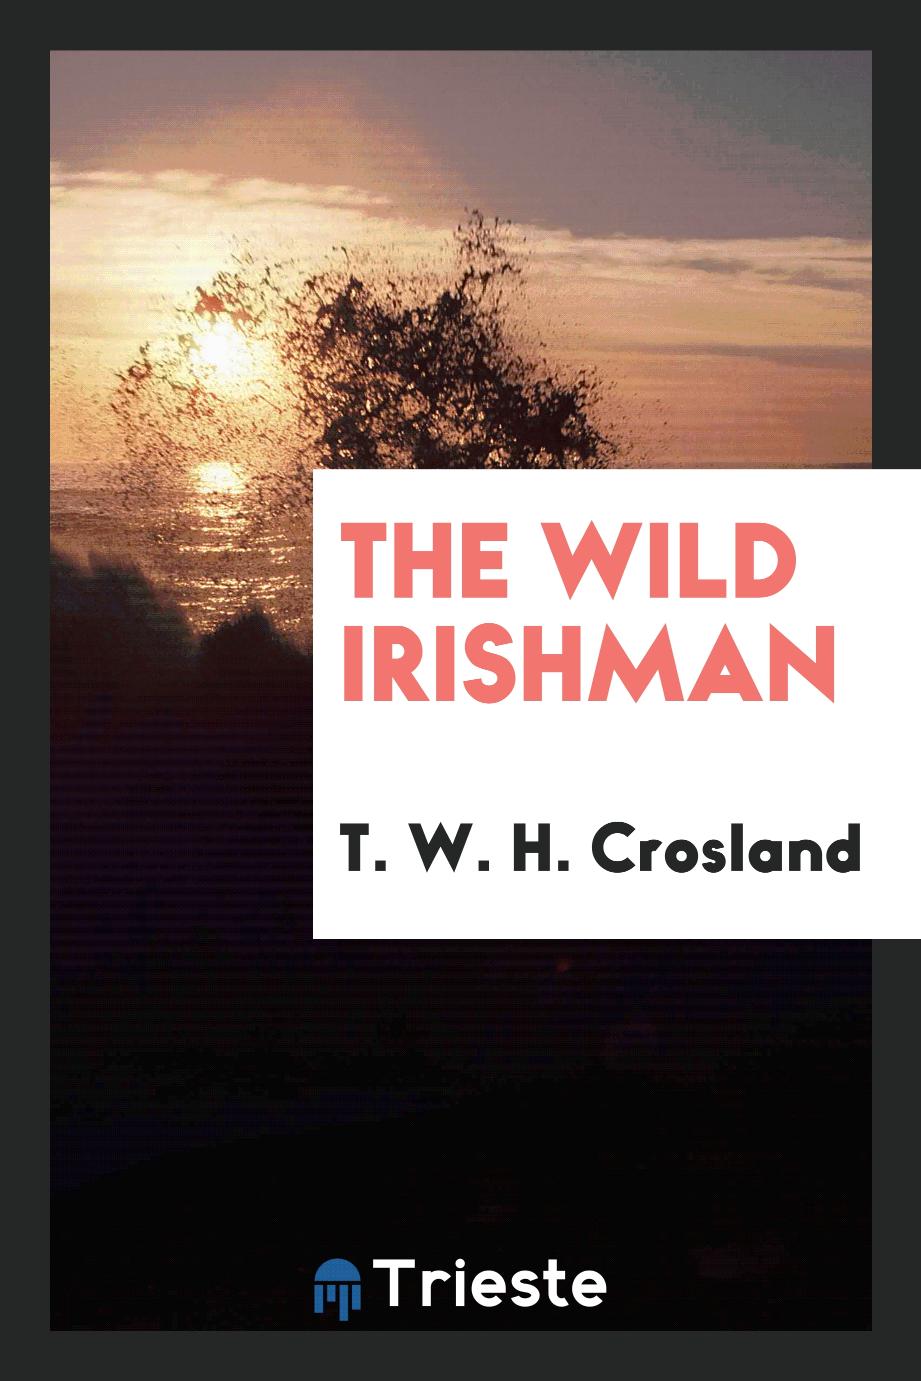 The wild Irishman